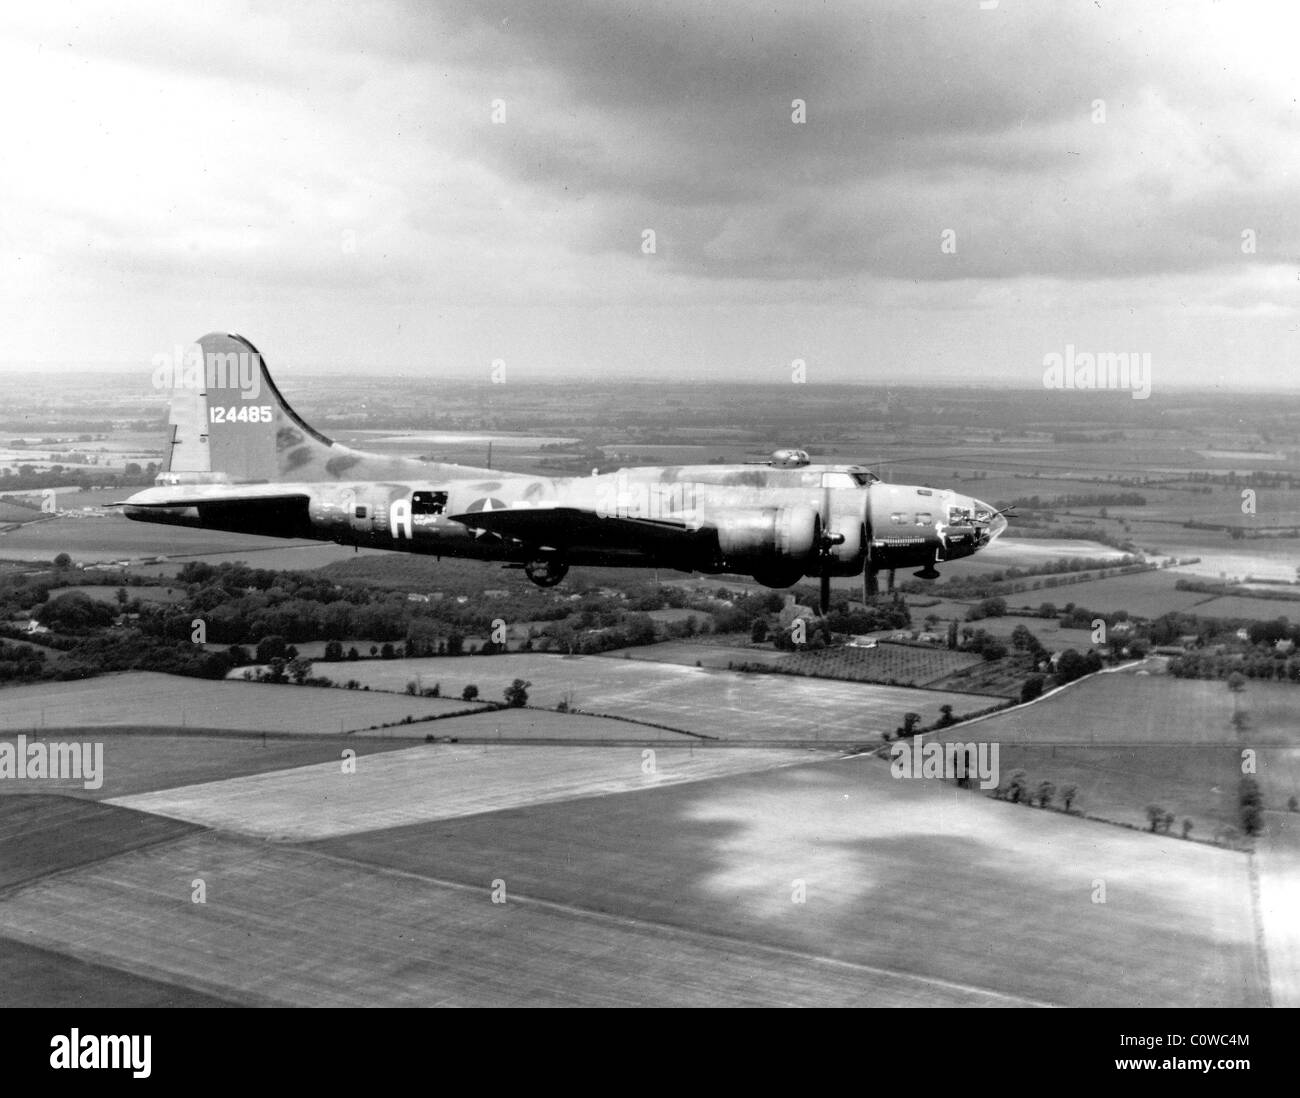 Memphis Belle, die Boeing b-17 "The Memphis Belle" ist auf dem Weg zurück in die Vereinigten Staaten von England abgebildet. Stockfoto